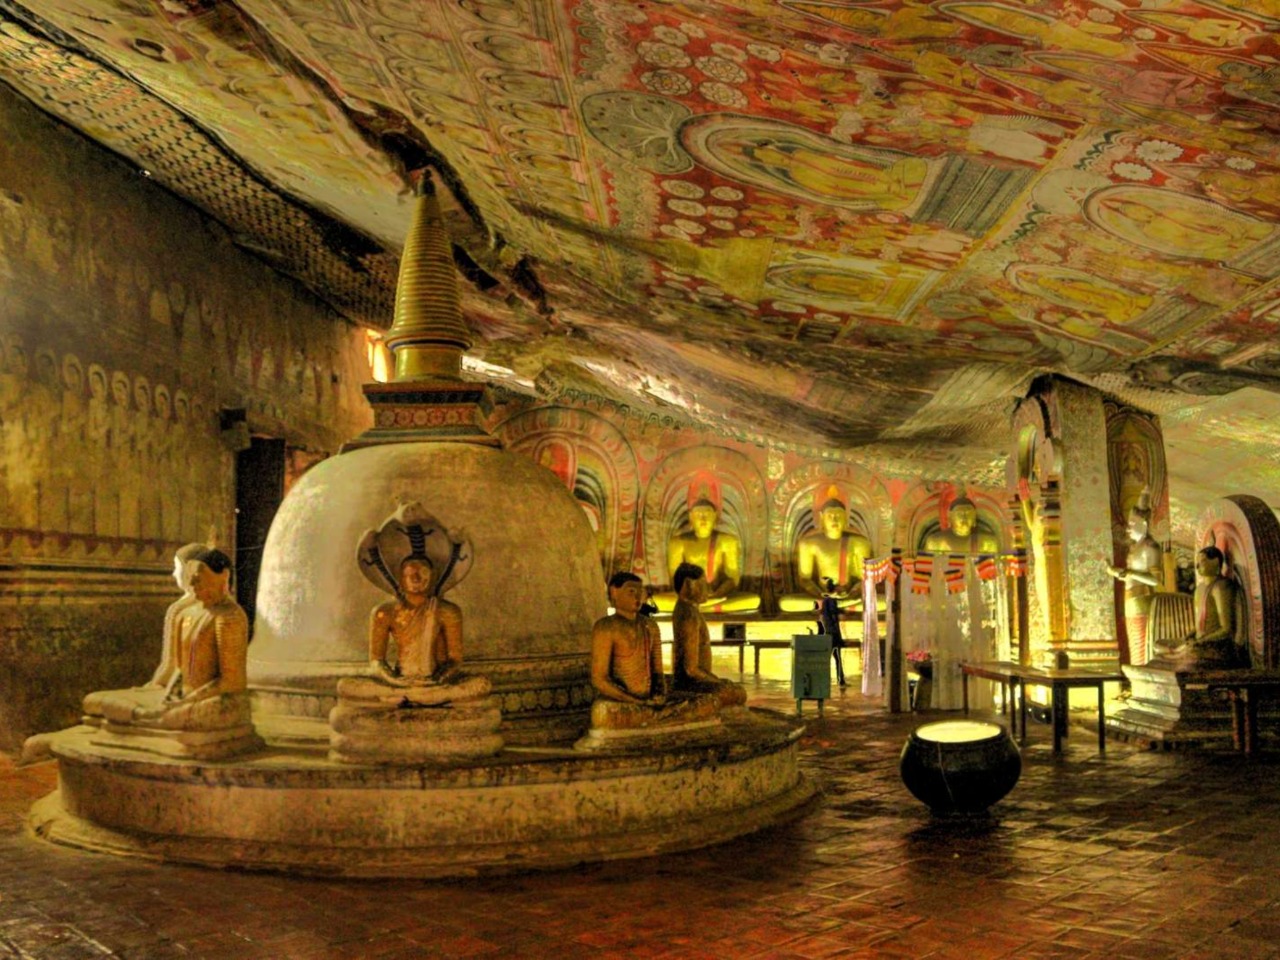 Дворец Сигирии и пещерные храмы Дамбулла | Цена 480€, отзывы, описание экскурсии